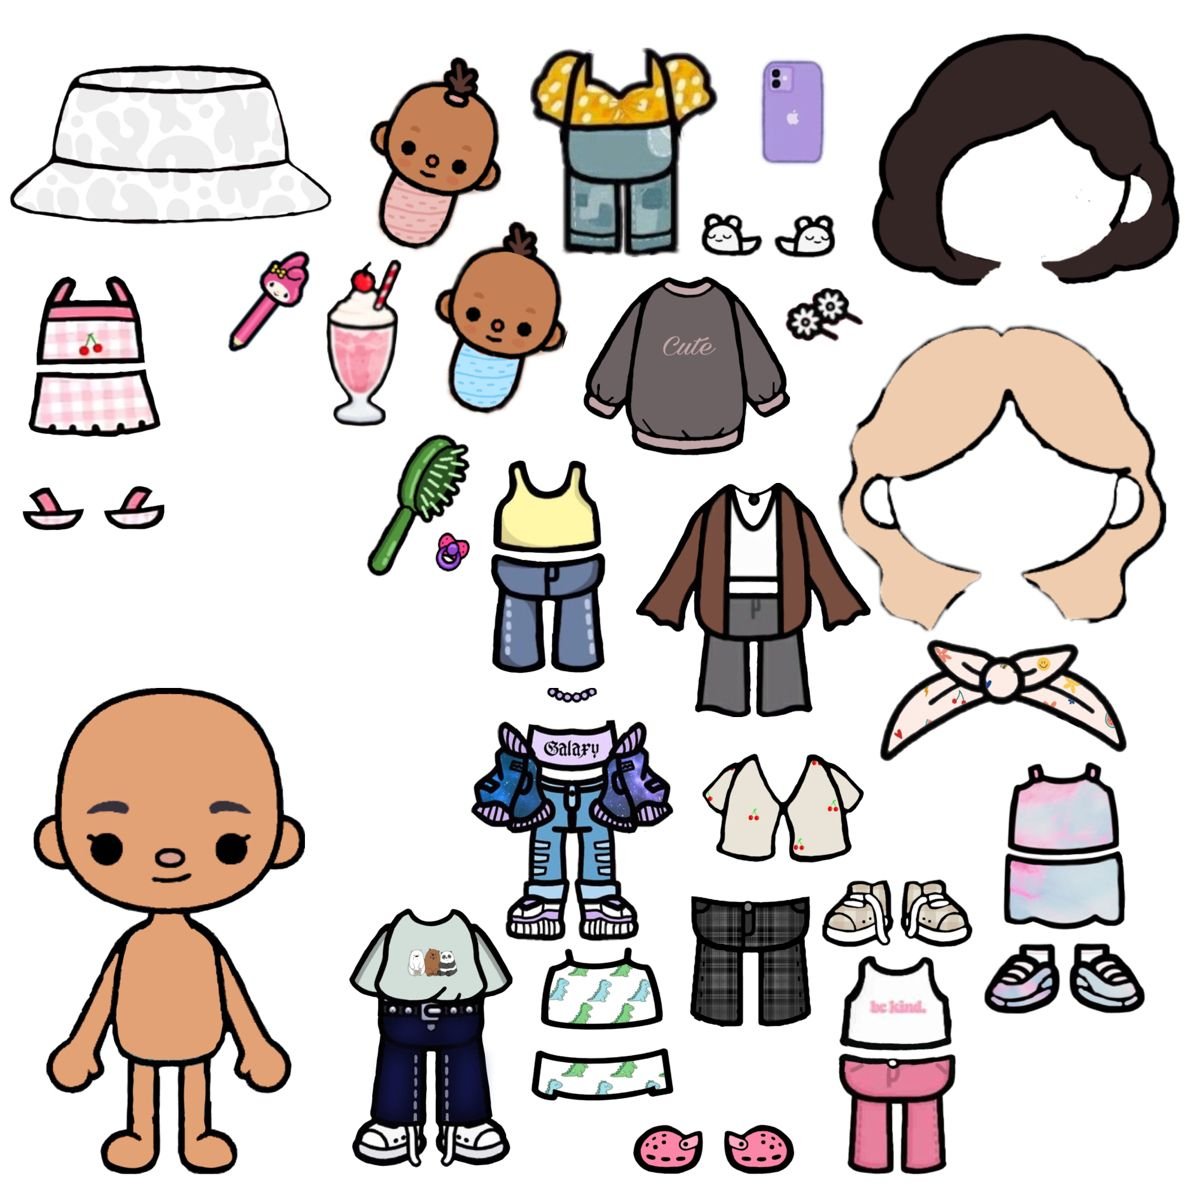 Бумажные куклы тока бока распечатать. Бумажные куклы с одеждой. Бумажные человечки с одеждой. Рисовать куклу с одеждой. Шаблоны одежды для кукол.